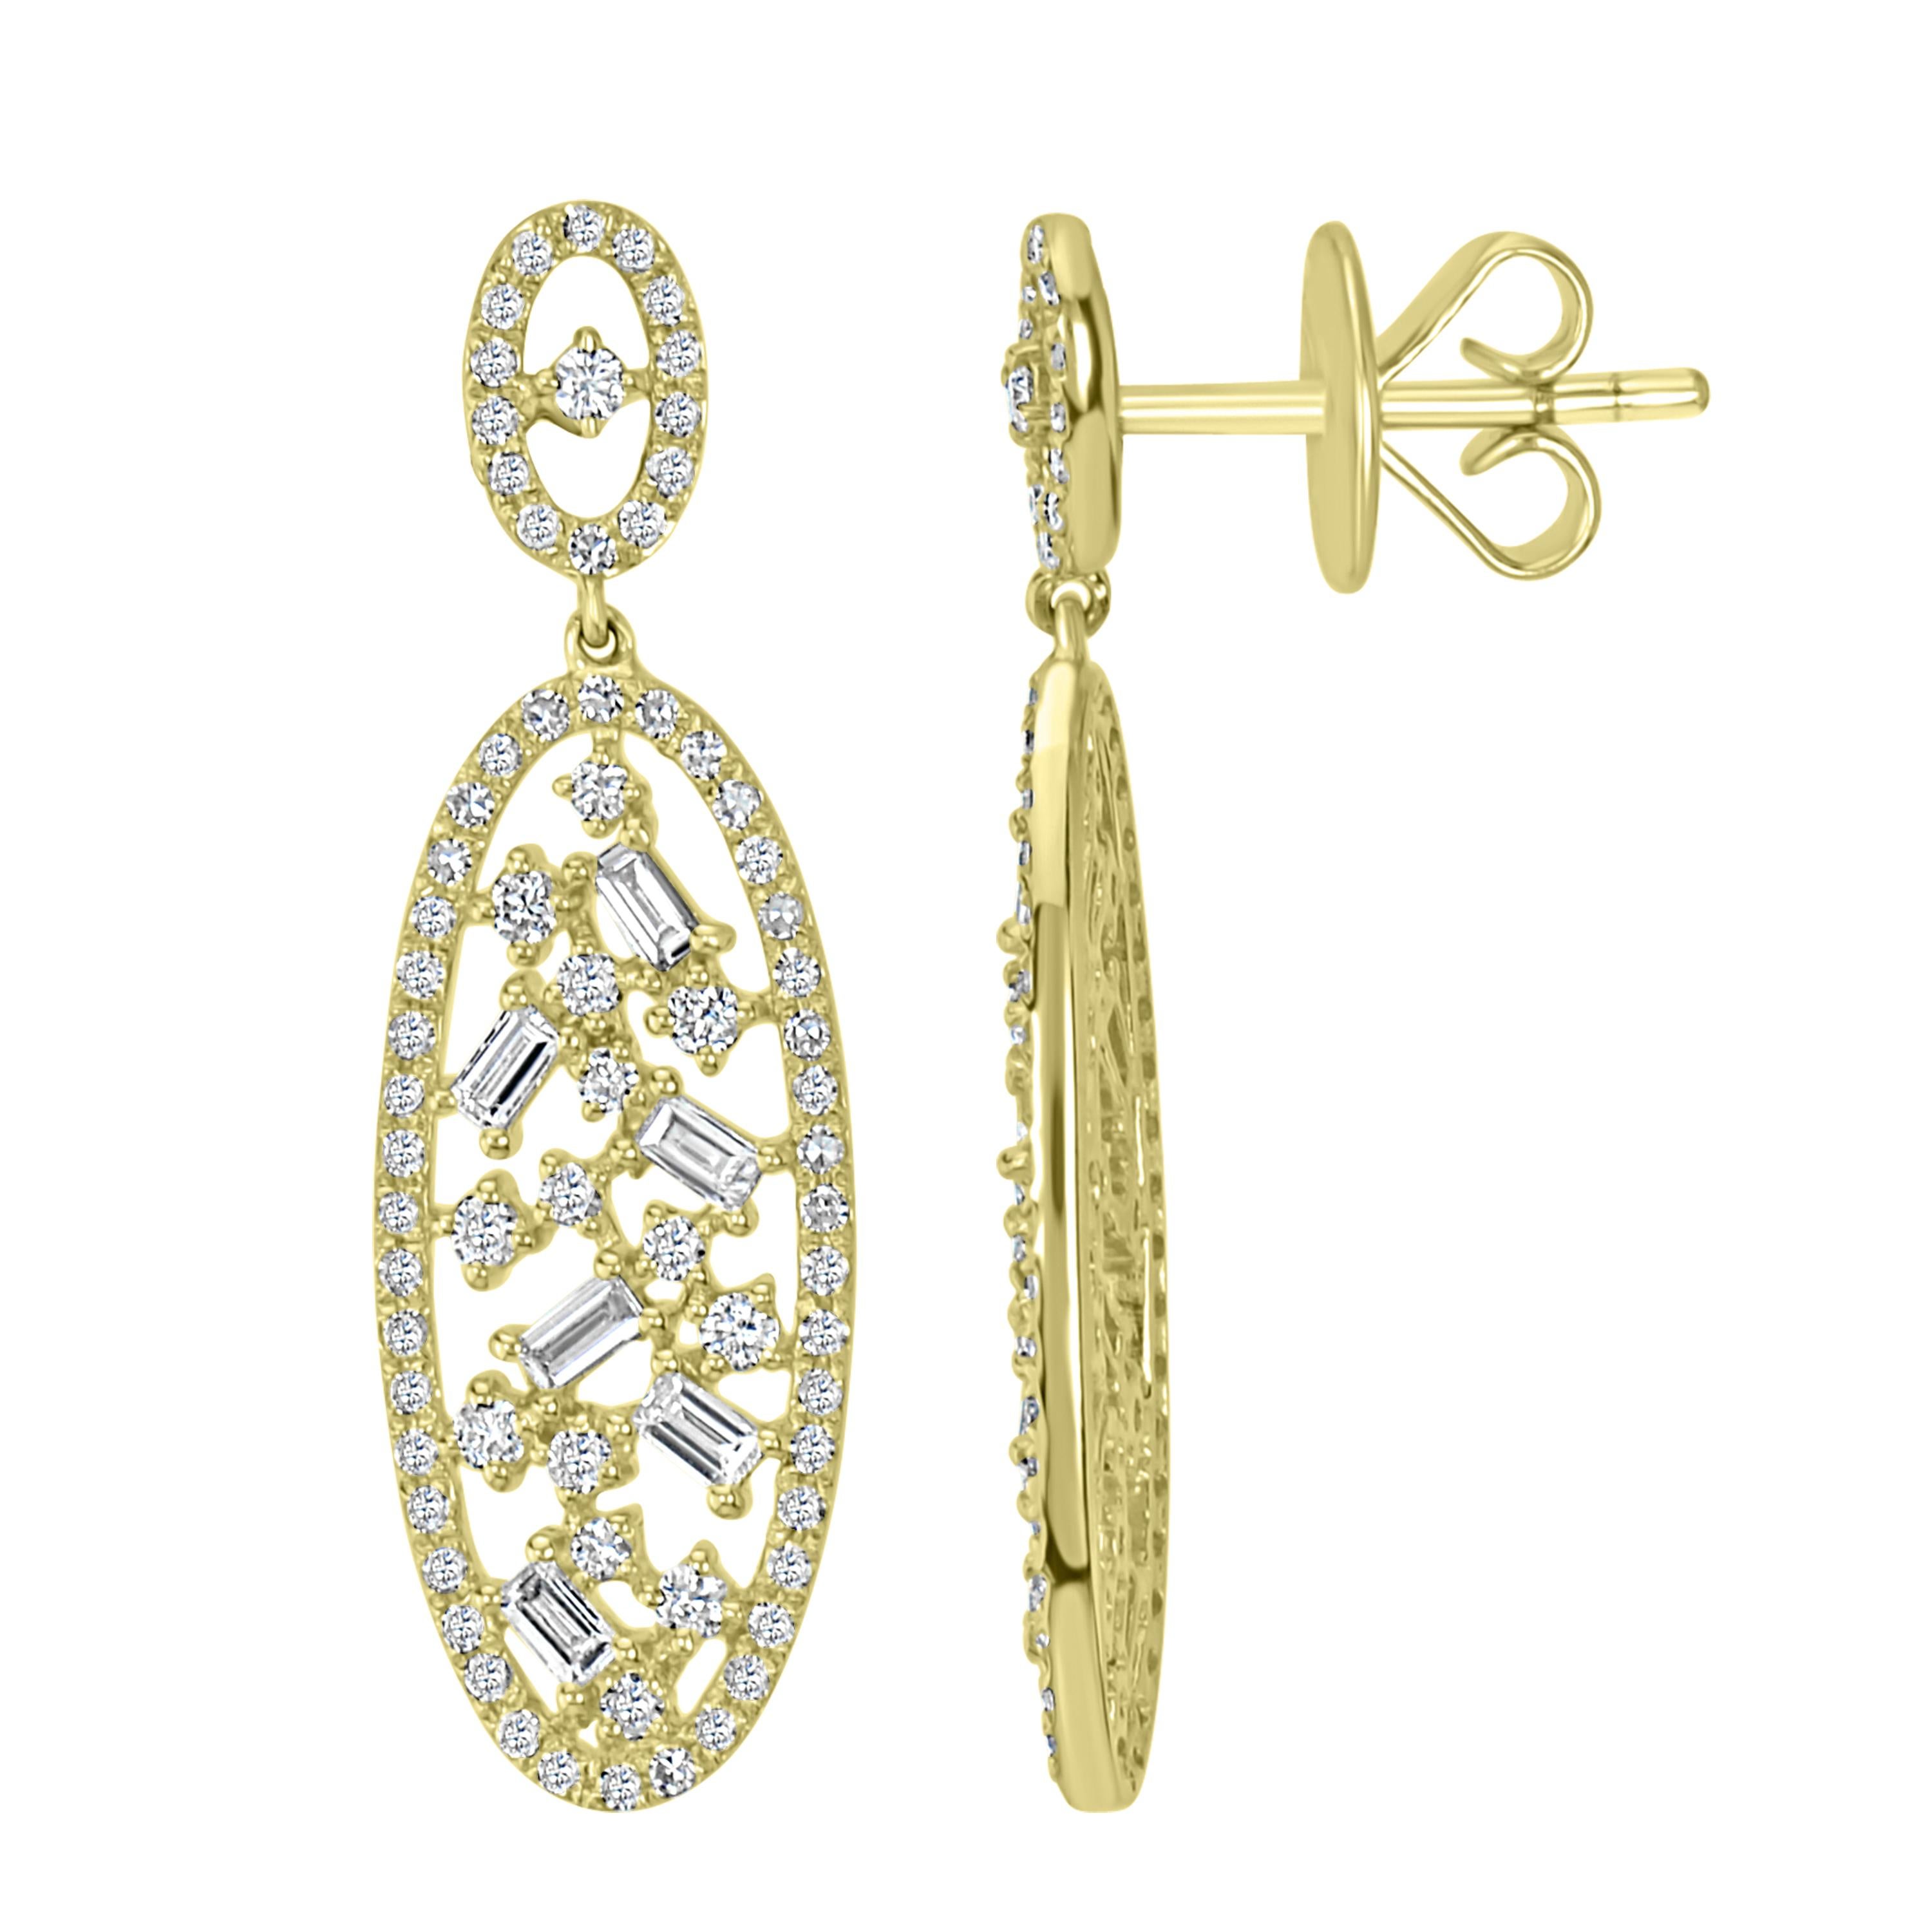 Baguette Cut Luxle 1.01 CT. T.W Diamond Oval Drop Earrings in 18k Yellow Gold